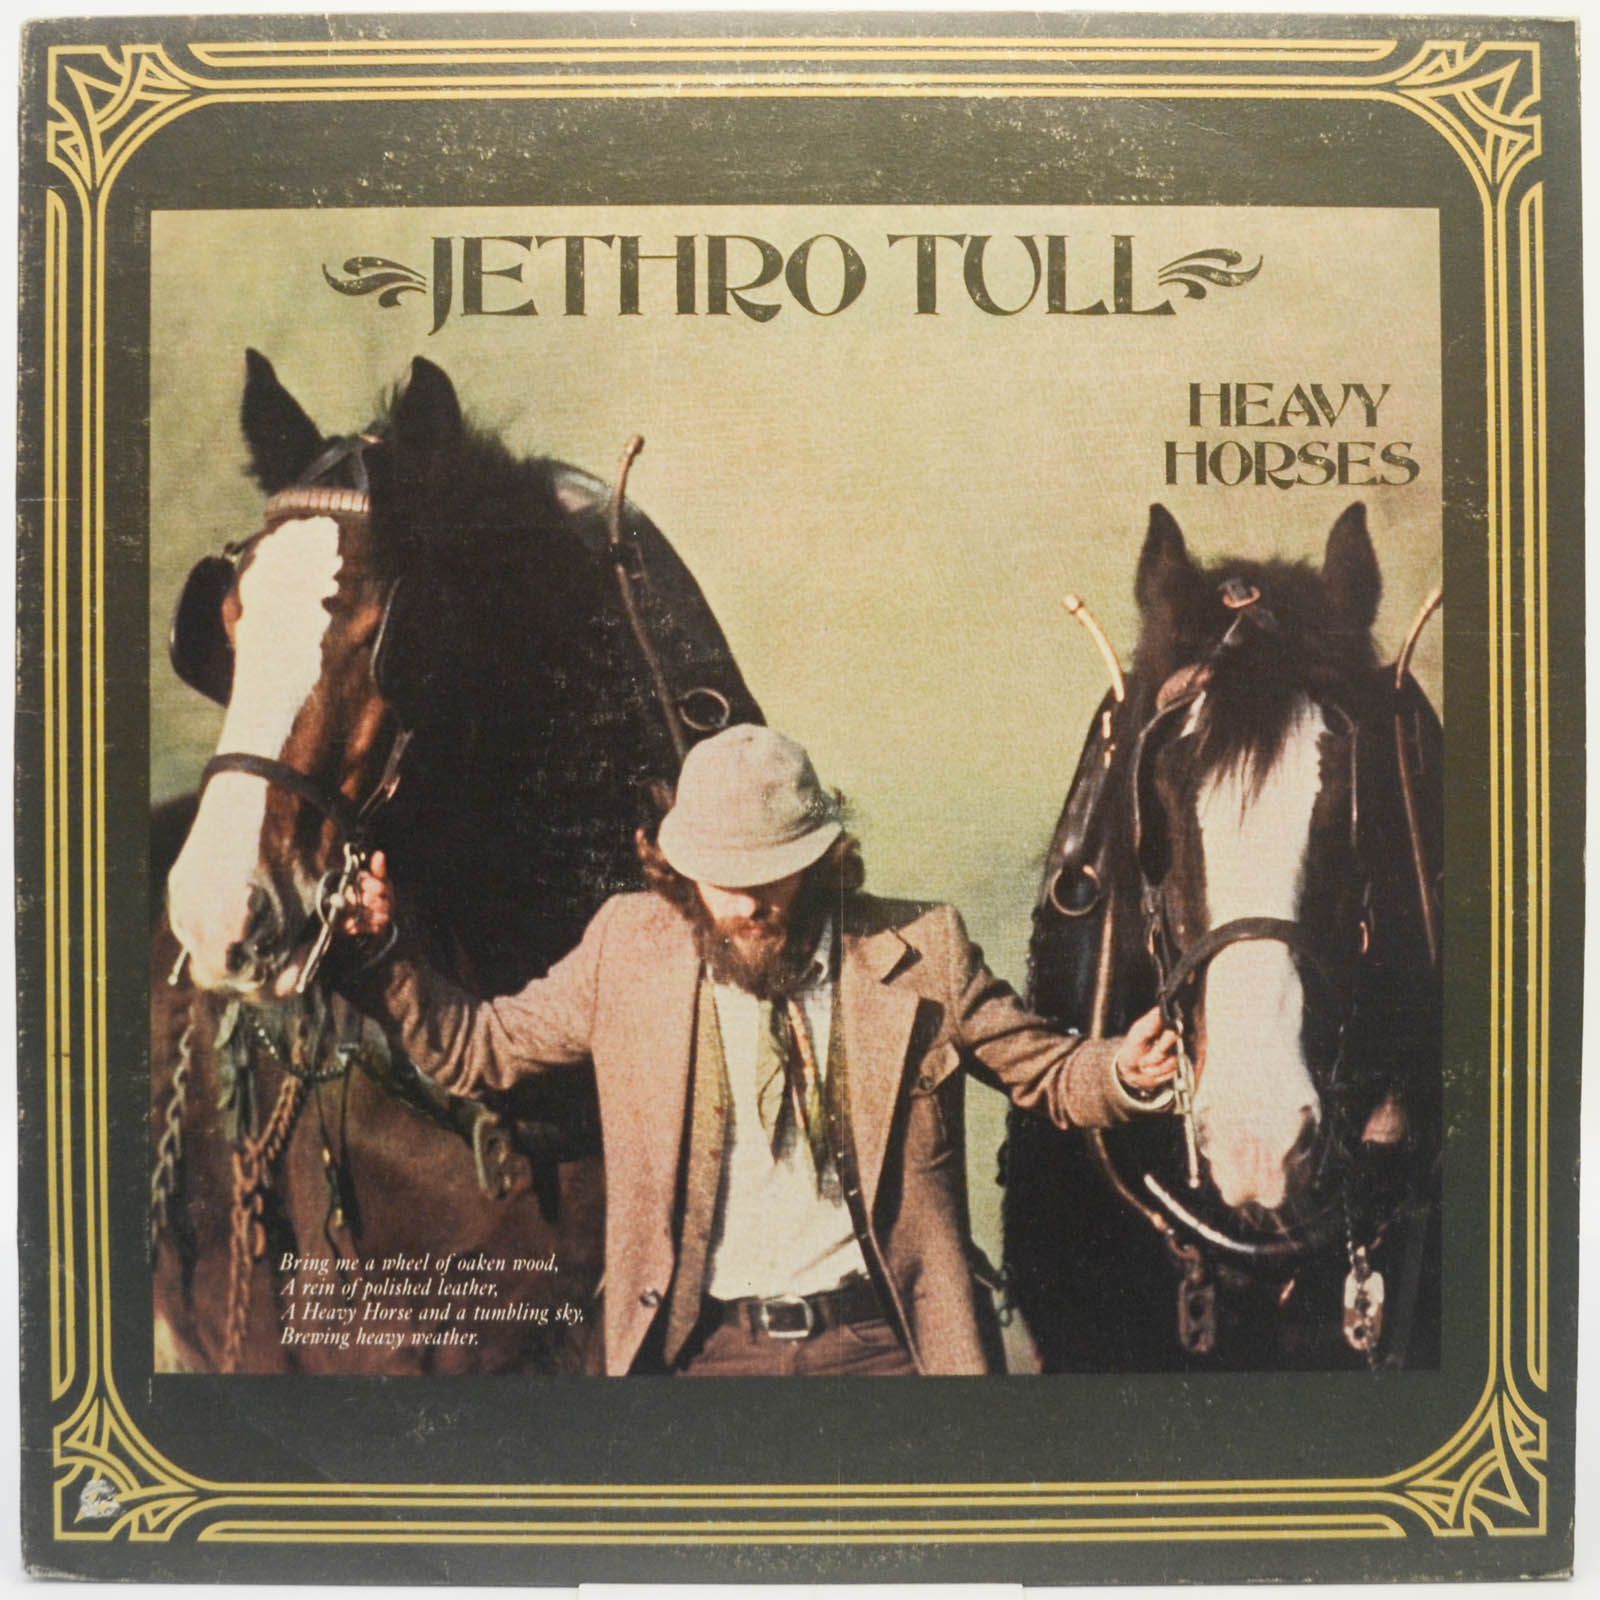 Jethro Tull — Heavy Horses (USA), 1978